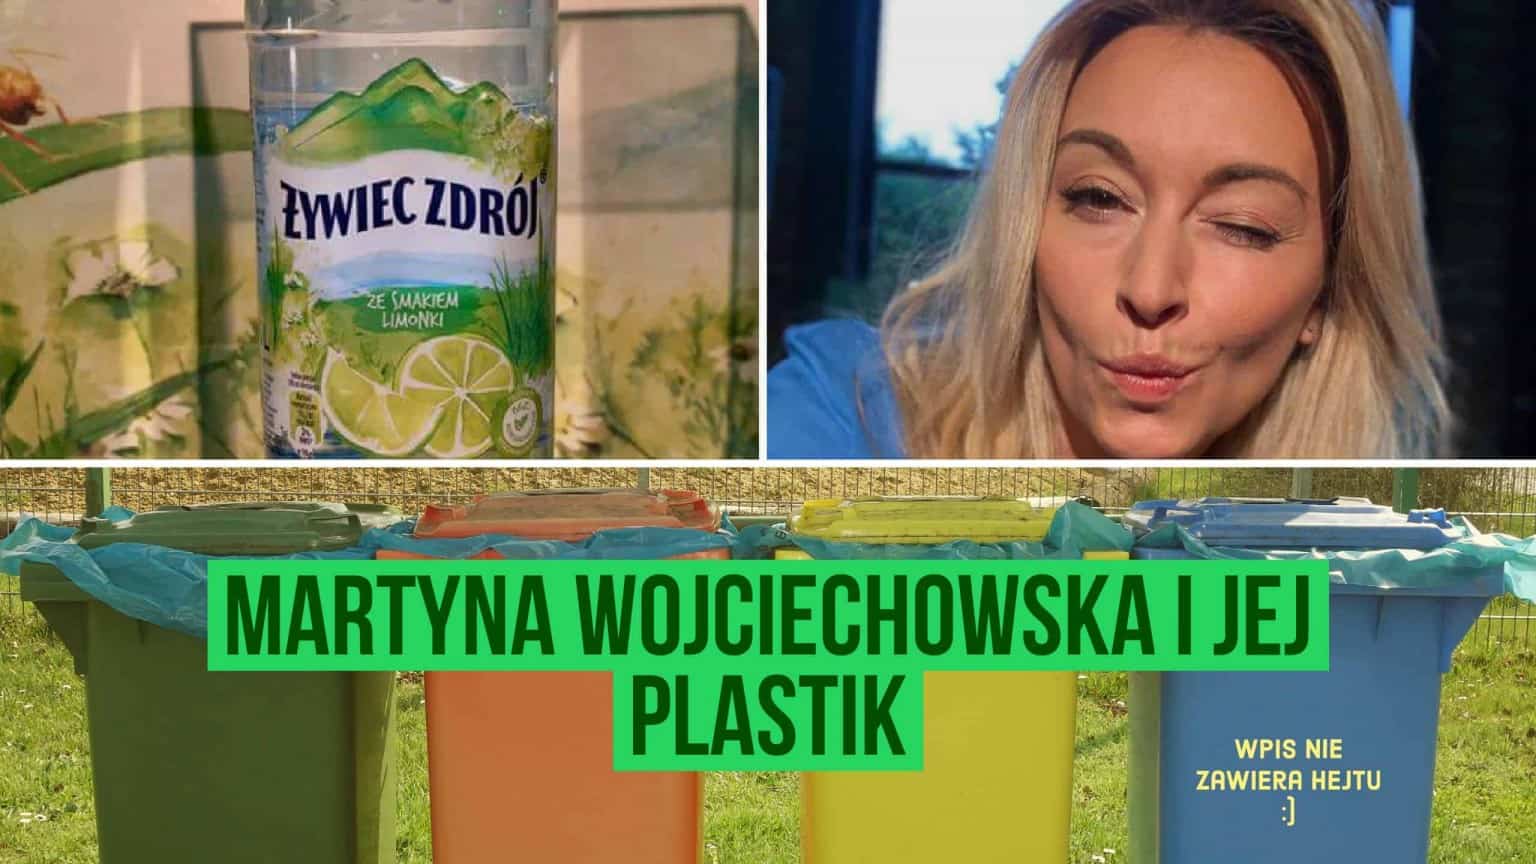 Martyna Wojciechowska Twitter żywiec zdrój